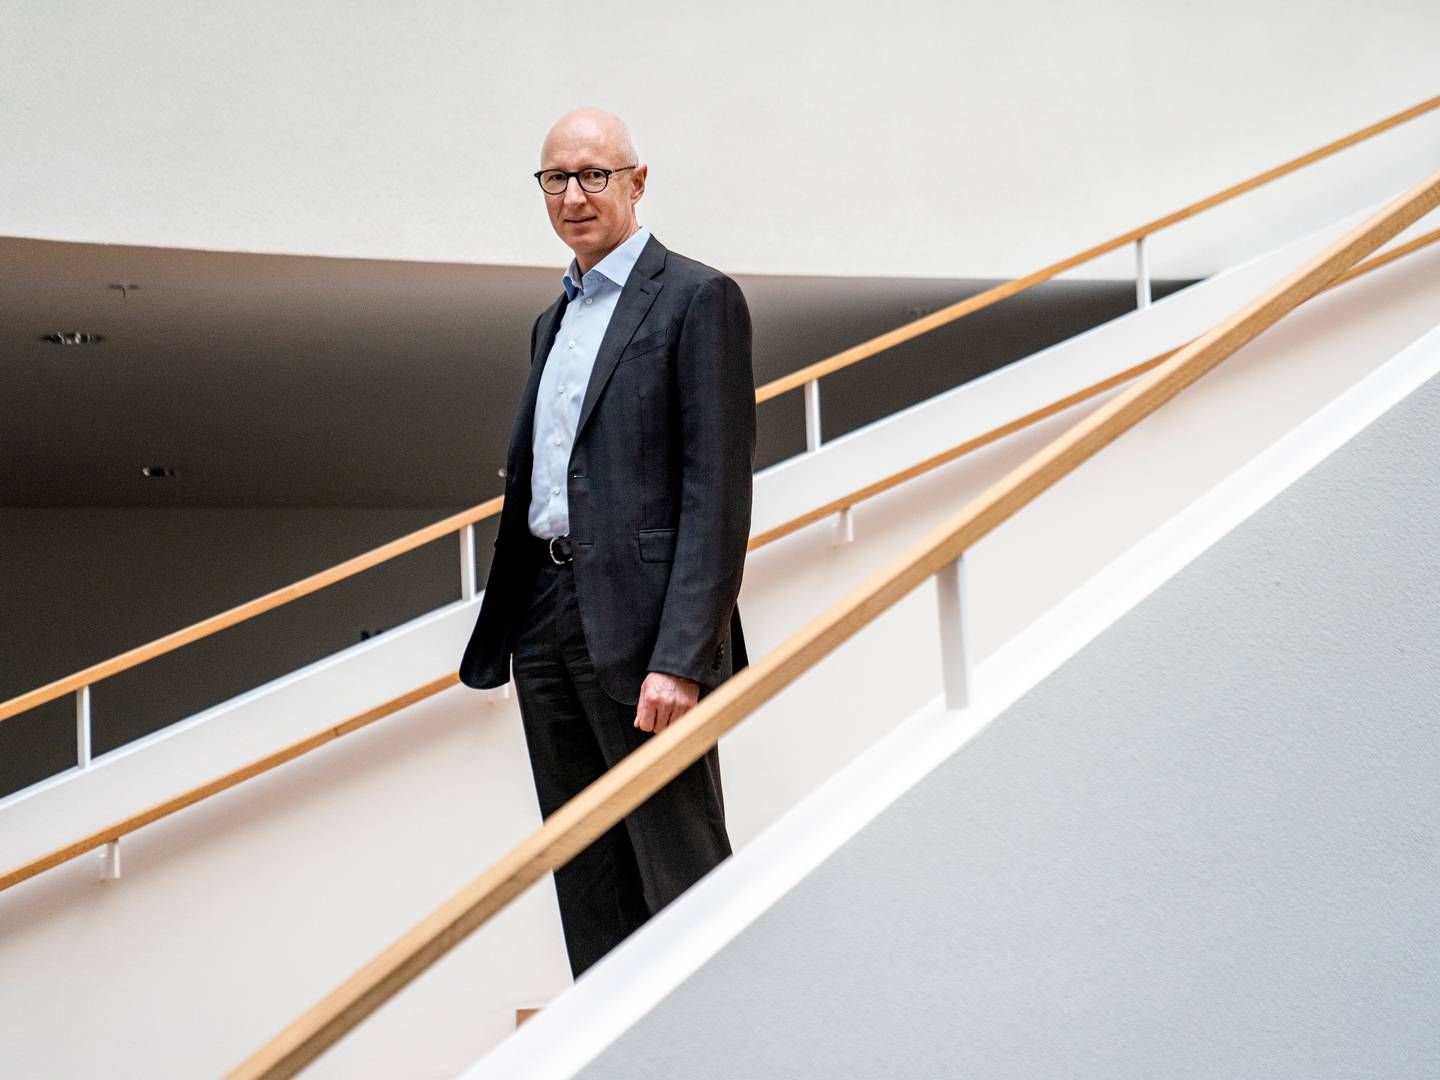 Novo Nordisks adm. direktør, Lars Fruergaard Jørgensen, sluttede 2023 af med at blive kåret som årets person af Financial Times. | Foto: Stine Bidstrup/Ritzau Scanpix